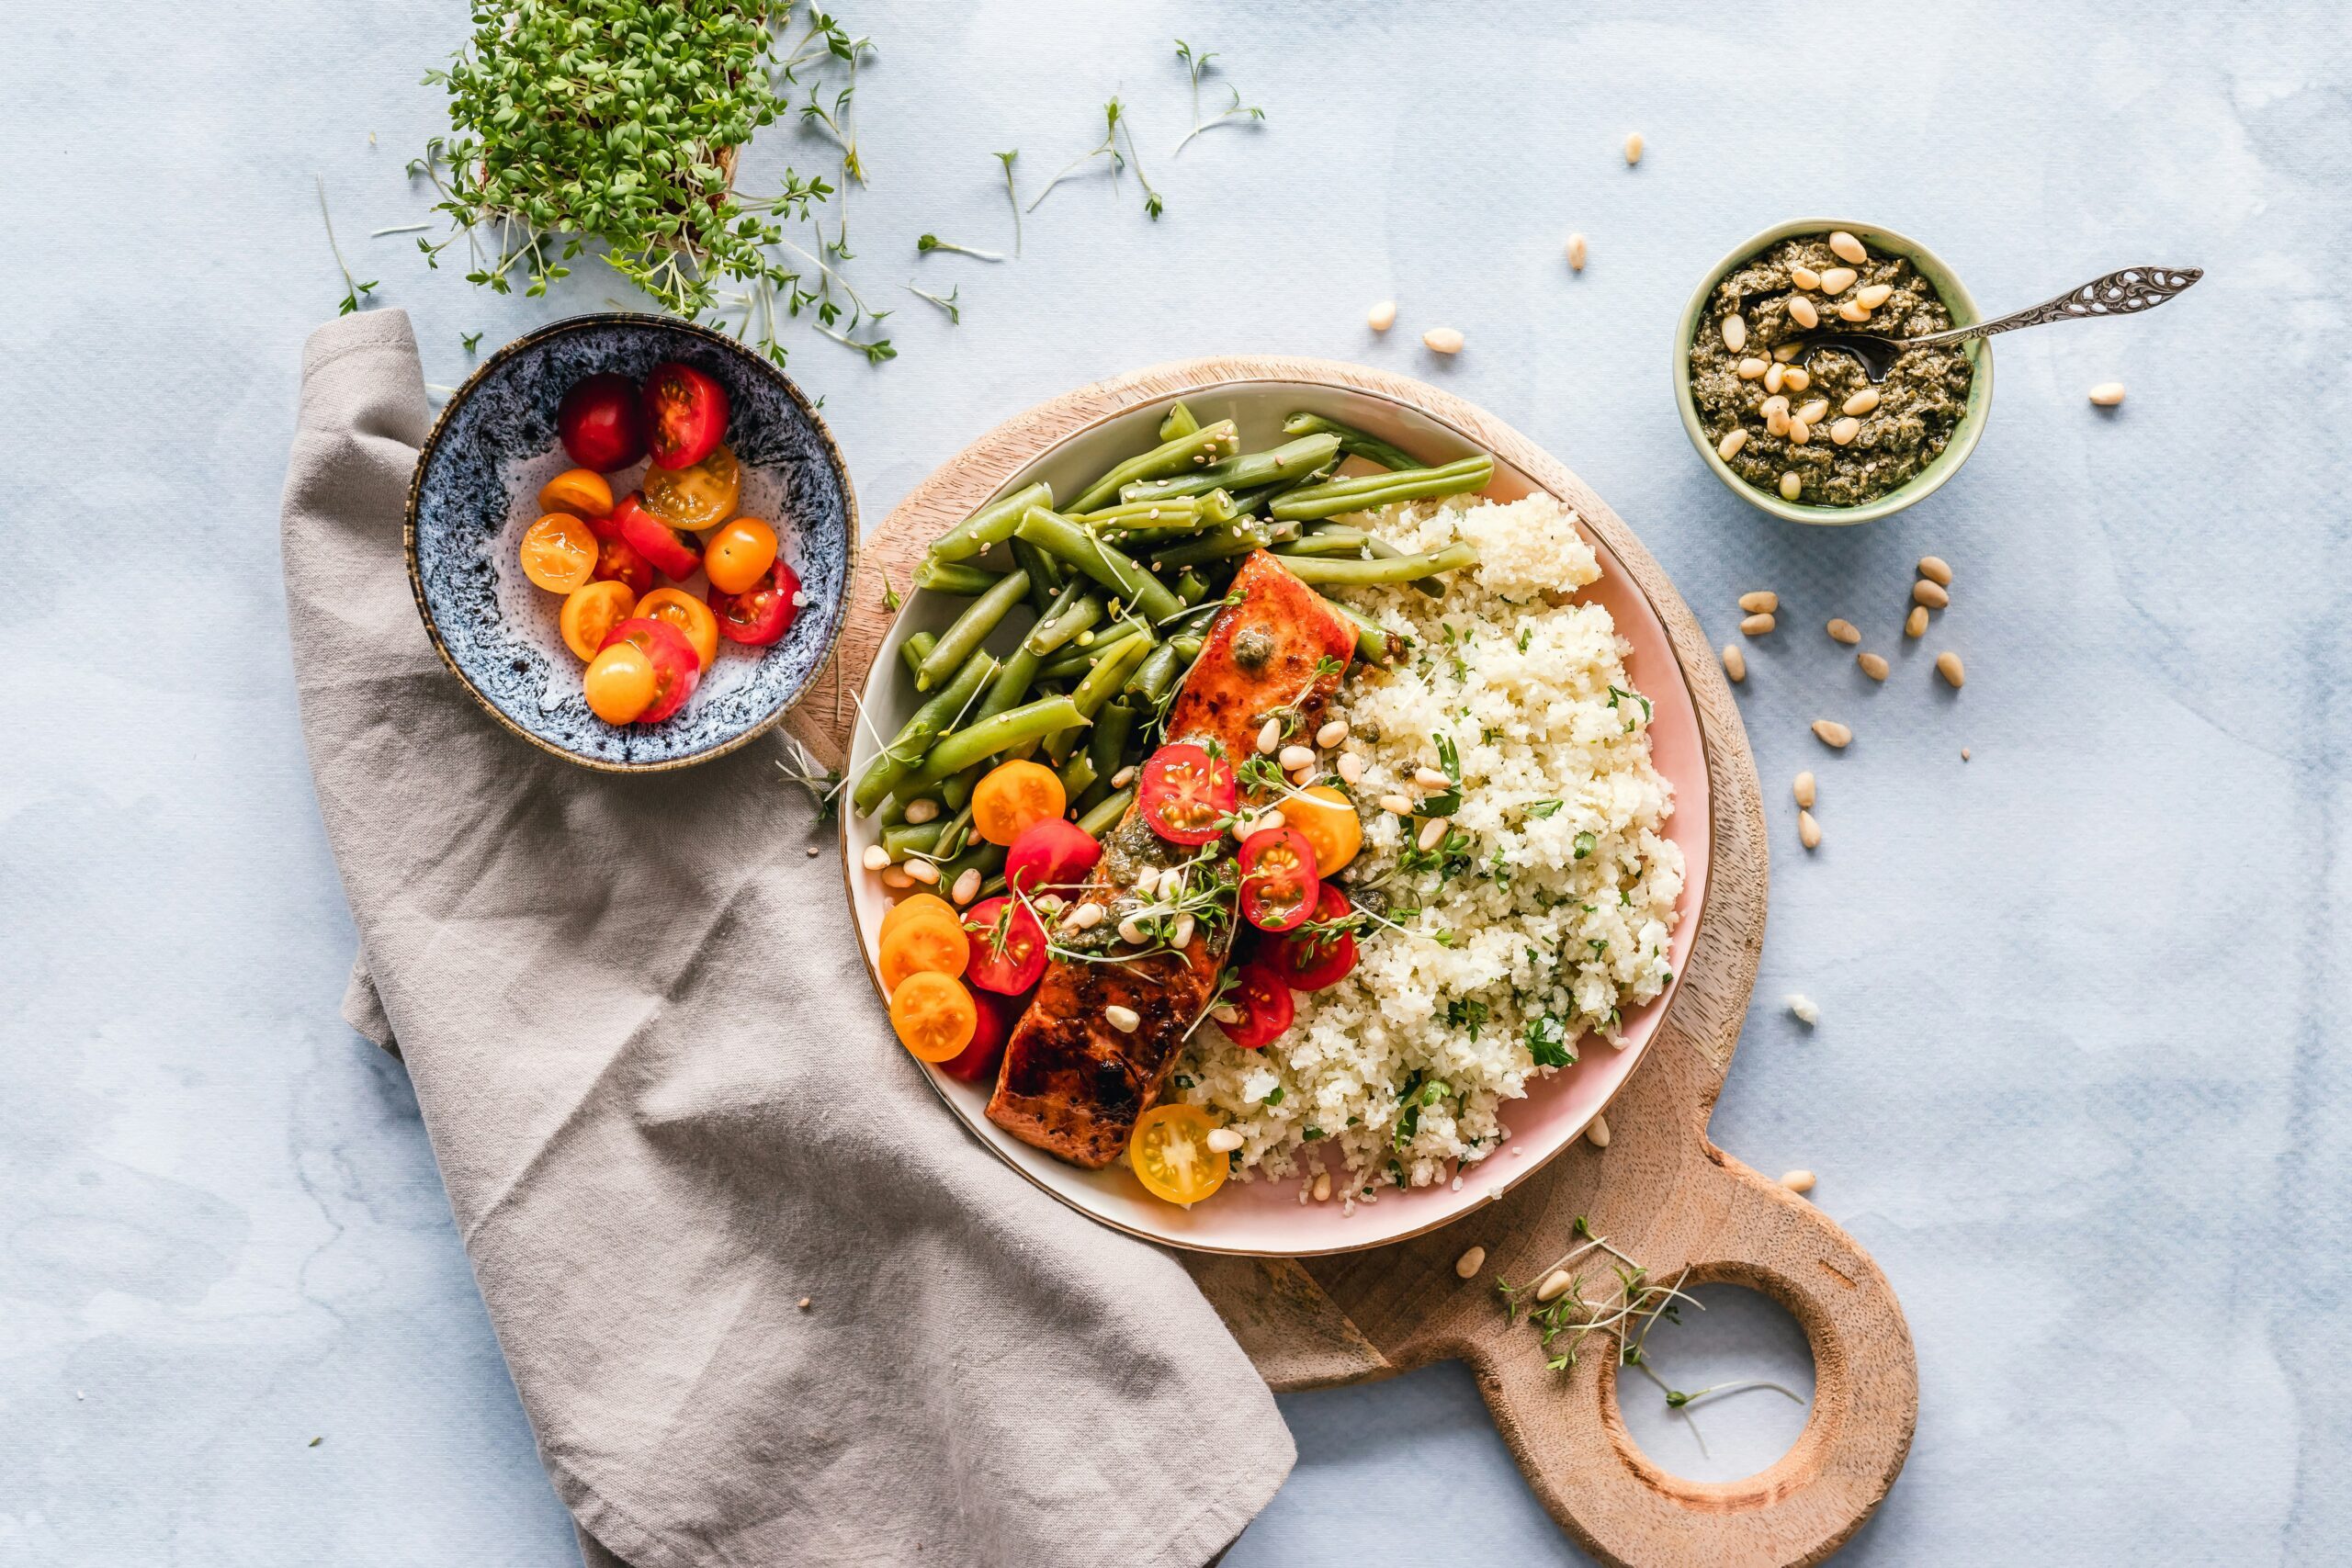 découvrez les bienfaits du quinoa, une graine riche en protéines et en nutriments essentiels, idéale pour une alimentation saine et équilibrée.